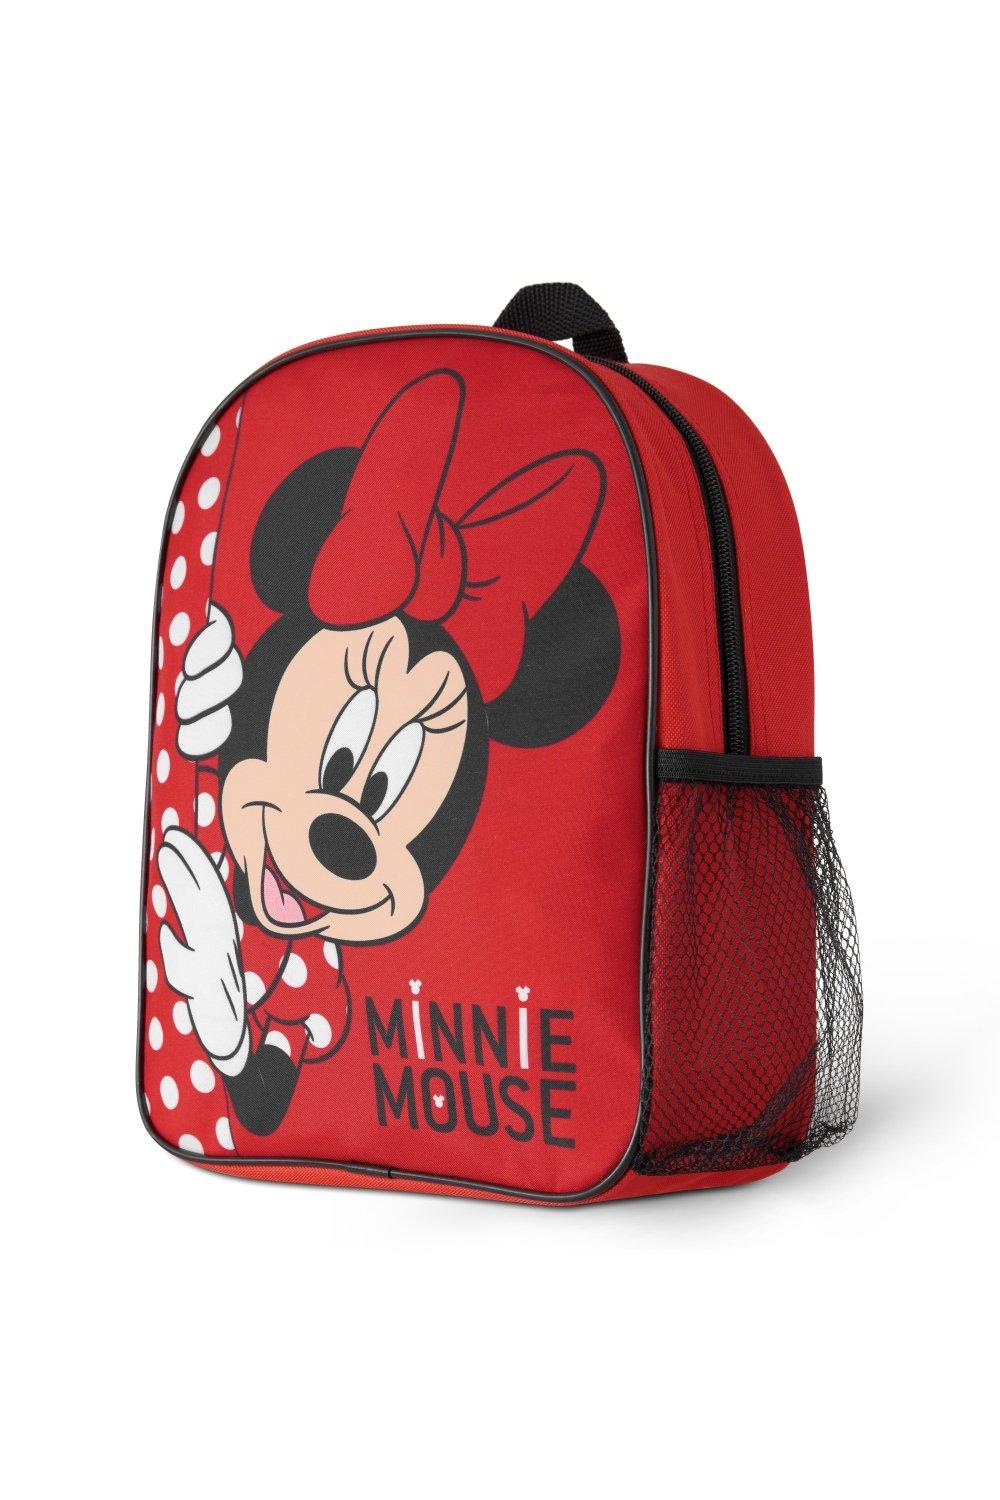 Рюкзак для девочек Минни Маус Disney, красный рюкзак для девочек и мальчиков 2 6 лет школьный ранец с милым кроликом и динозавром для детского сада